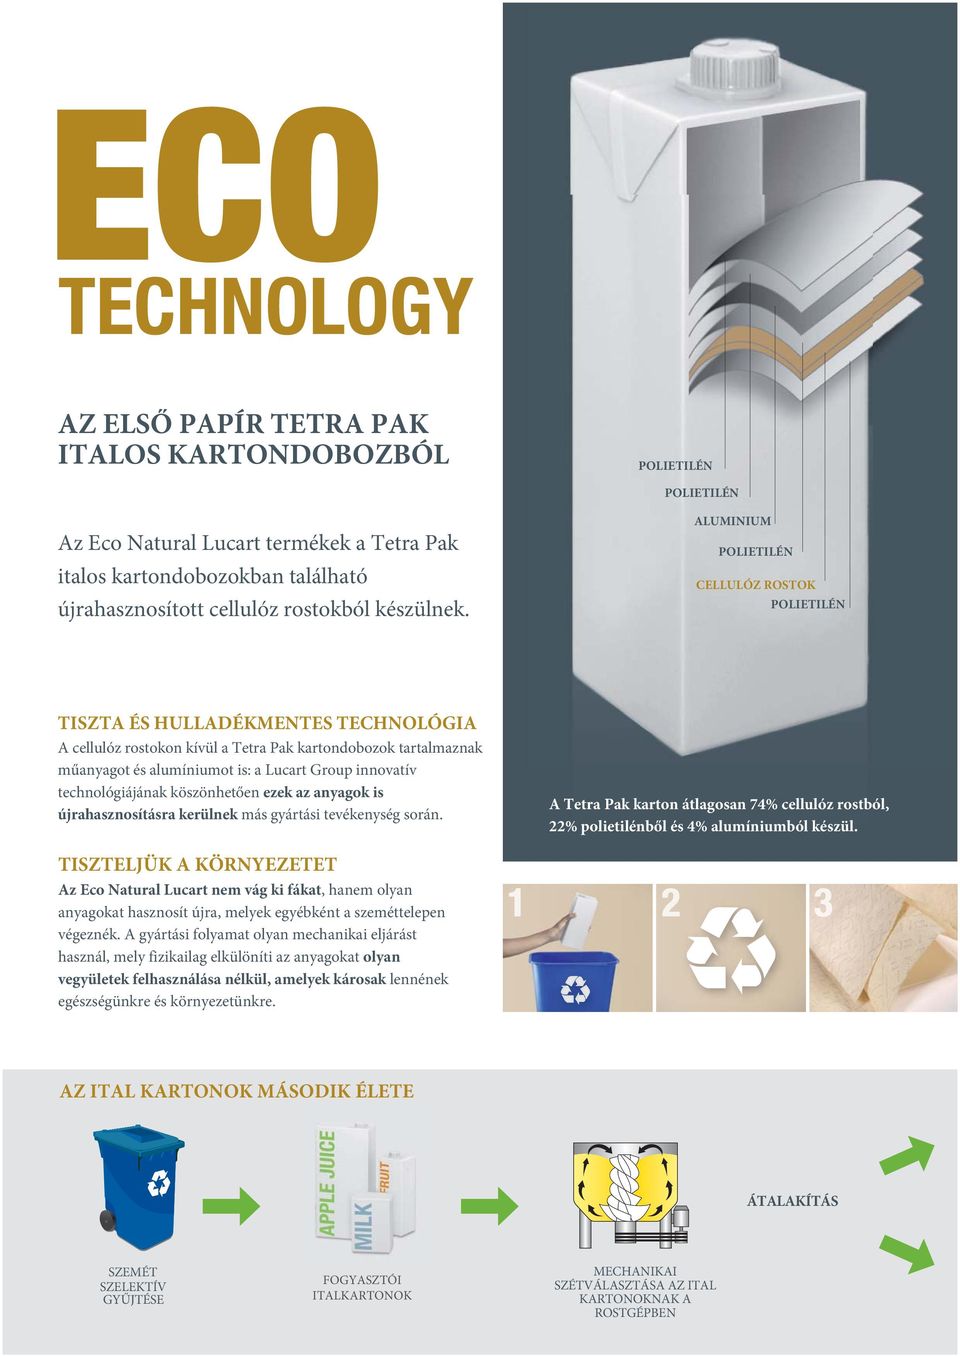 köszönhetően ezek az anyagok is újrahasznosításra kerülnek más gyártási tevékenység során. A Tetra Pak karton átlagosan 74% cellulóz rostból, 22% polietilénből és 4% alumíniumból készül.